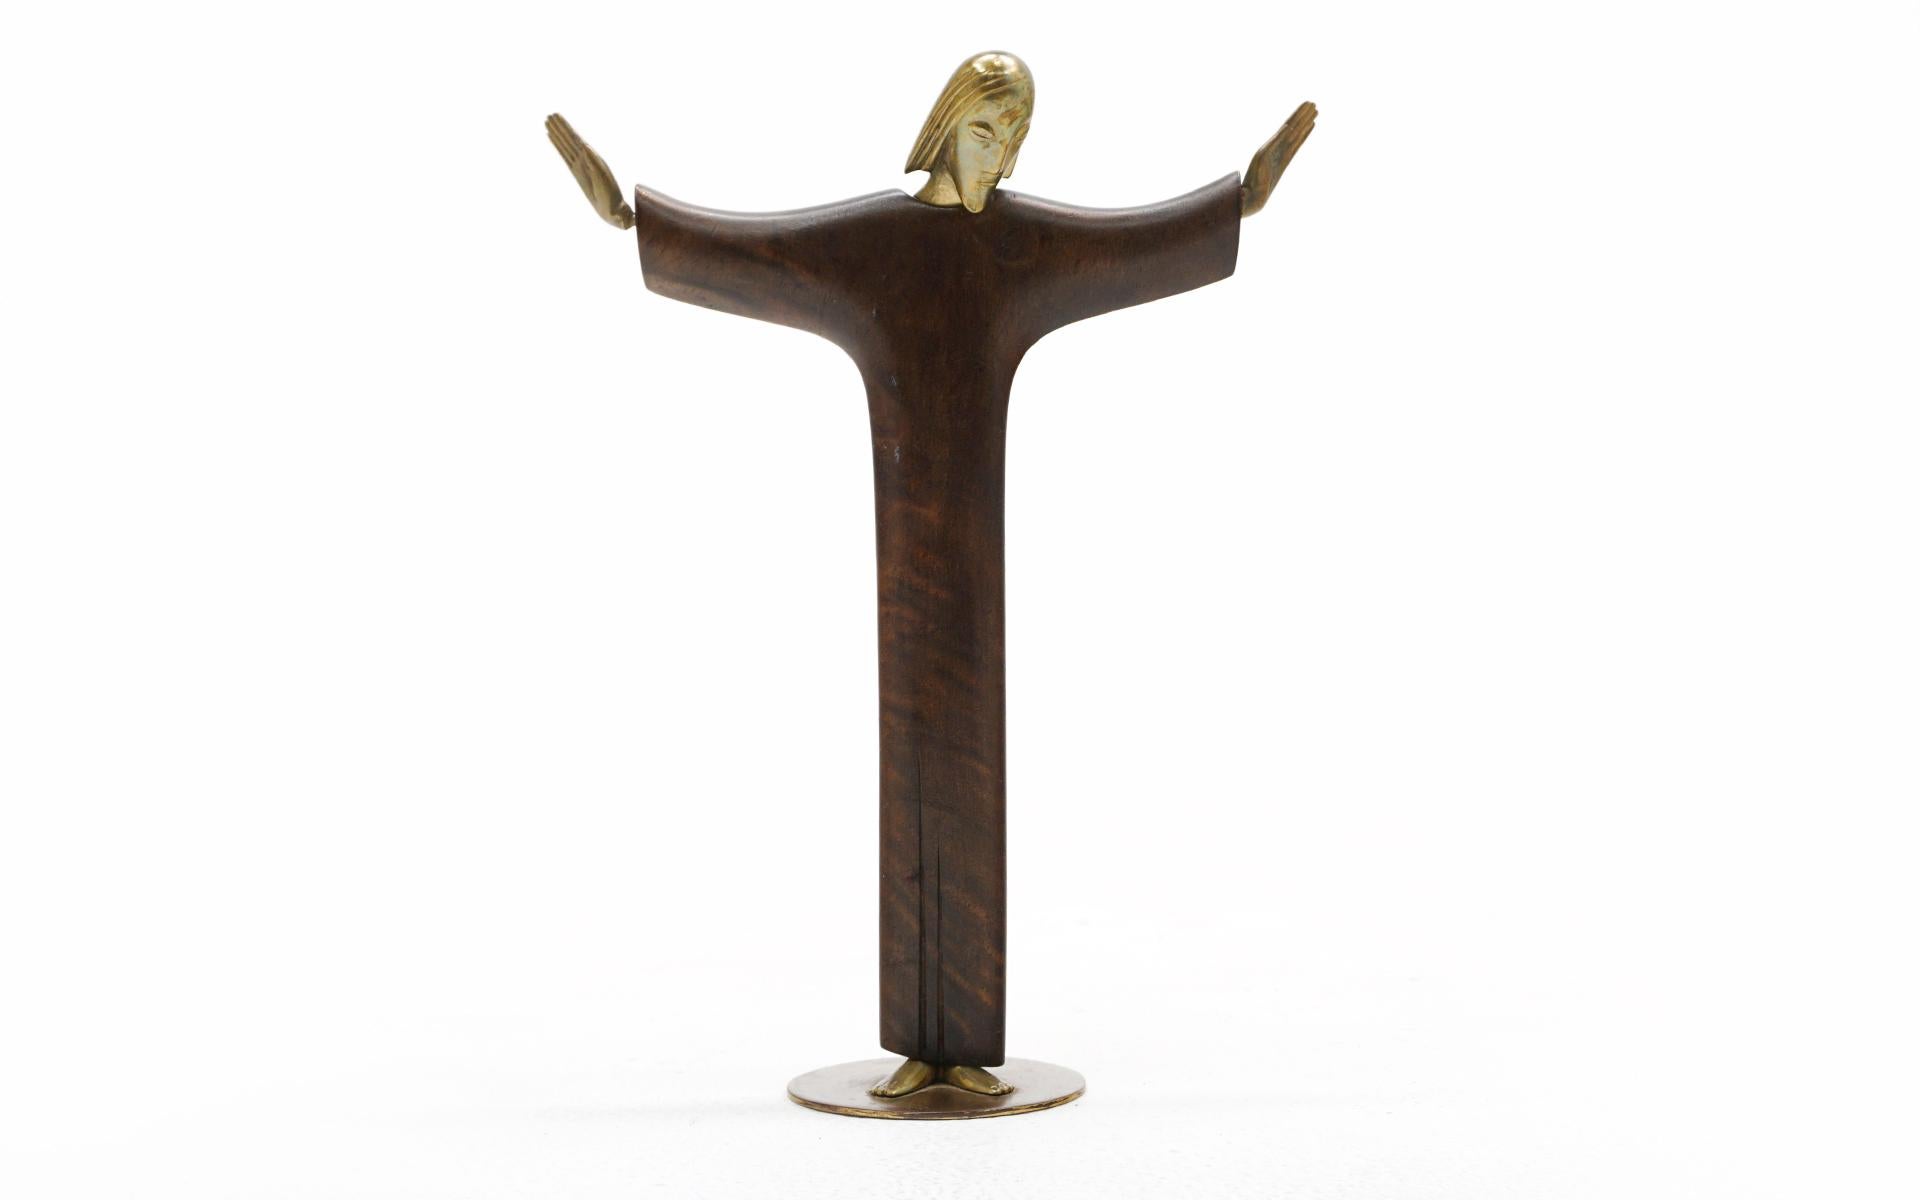 Seltene Tischskulptur ohne Titel (Jesus Christus) von Karl Hagenauer für die Werkstätte Hagenauer, Österreich, um 1950
Korpus aus brasilianischem Palisanderholz, Kopf und Hände aus Bronze. Eine Hand dreht sich an Ort und Stelle. Der Zustand ist